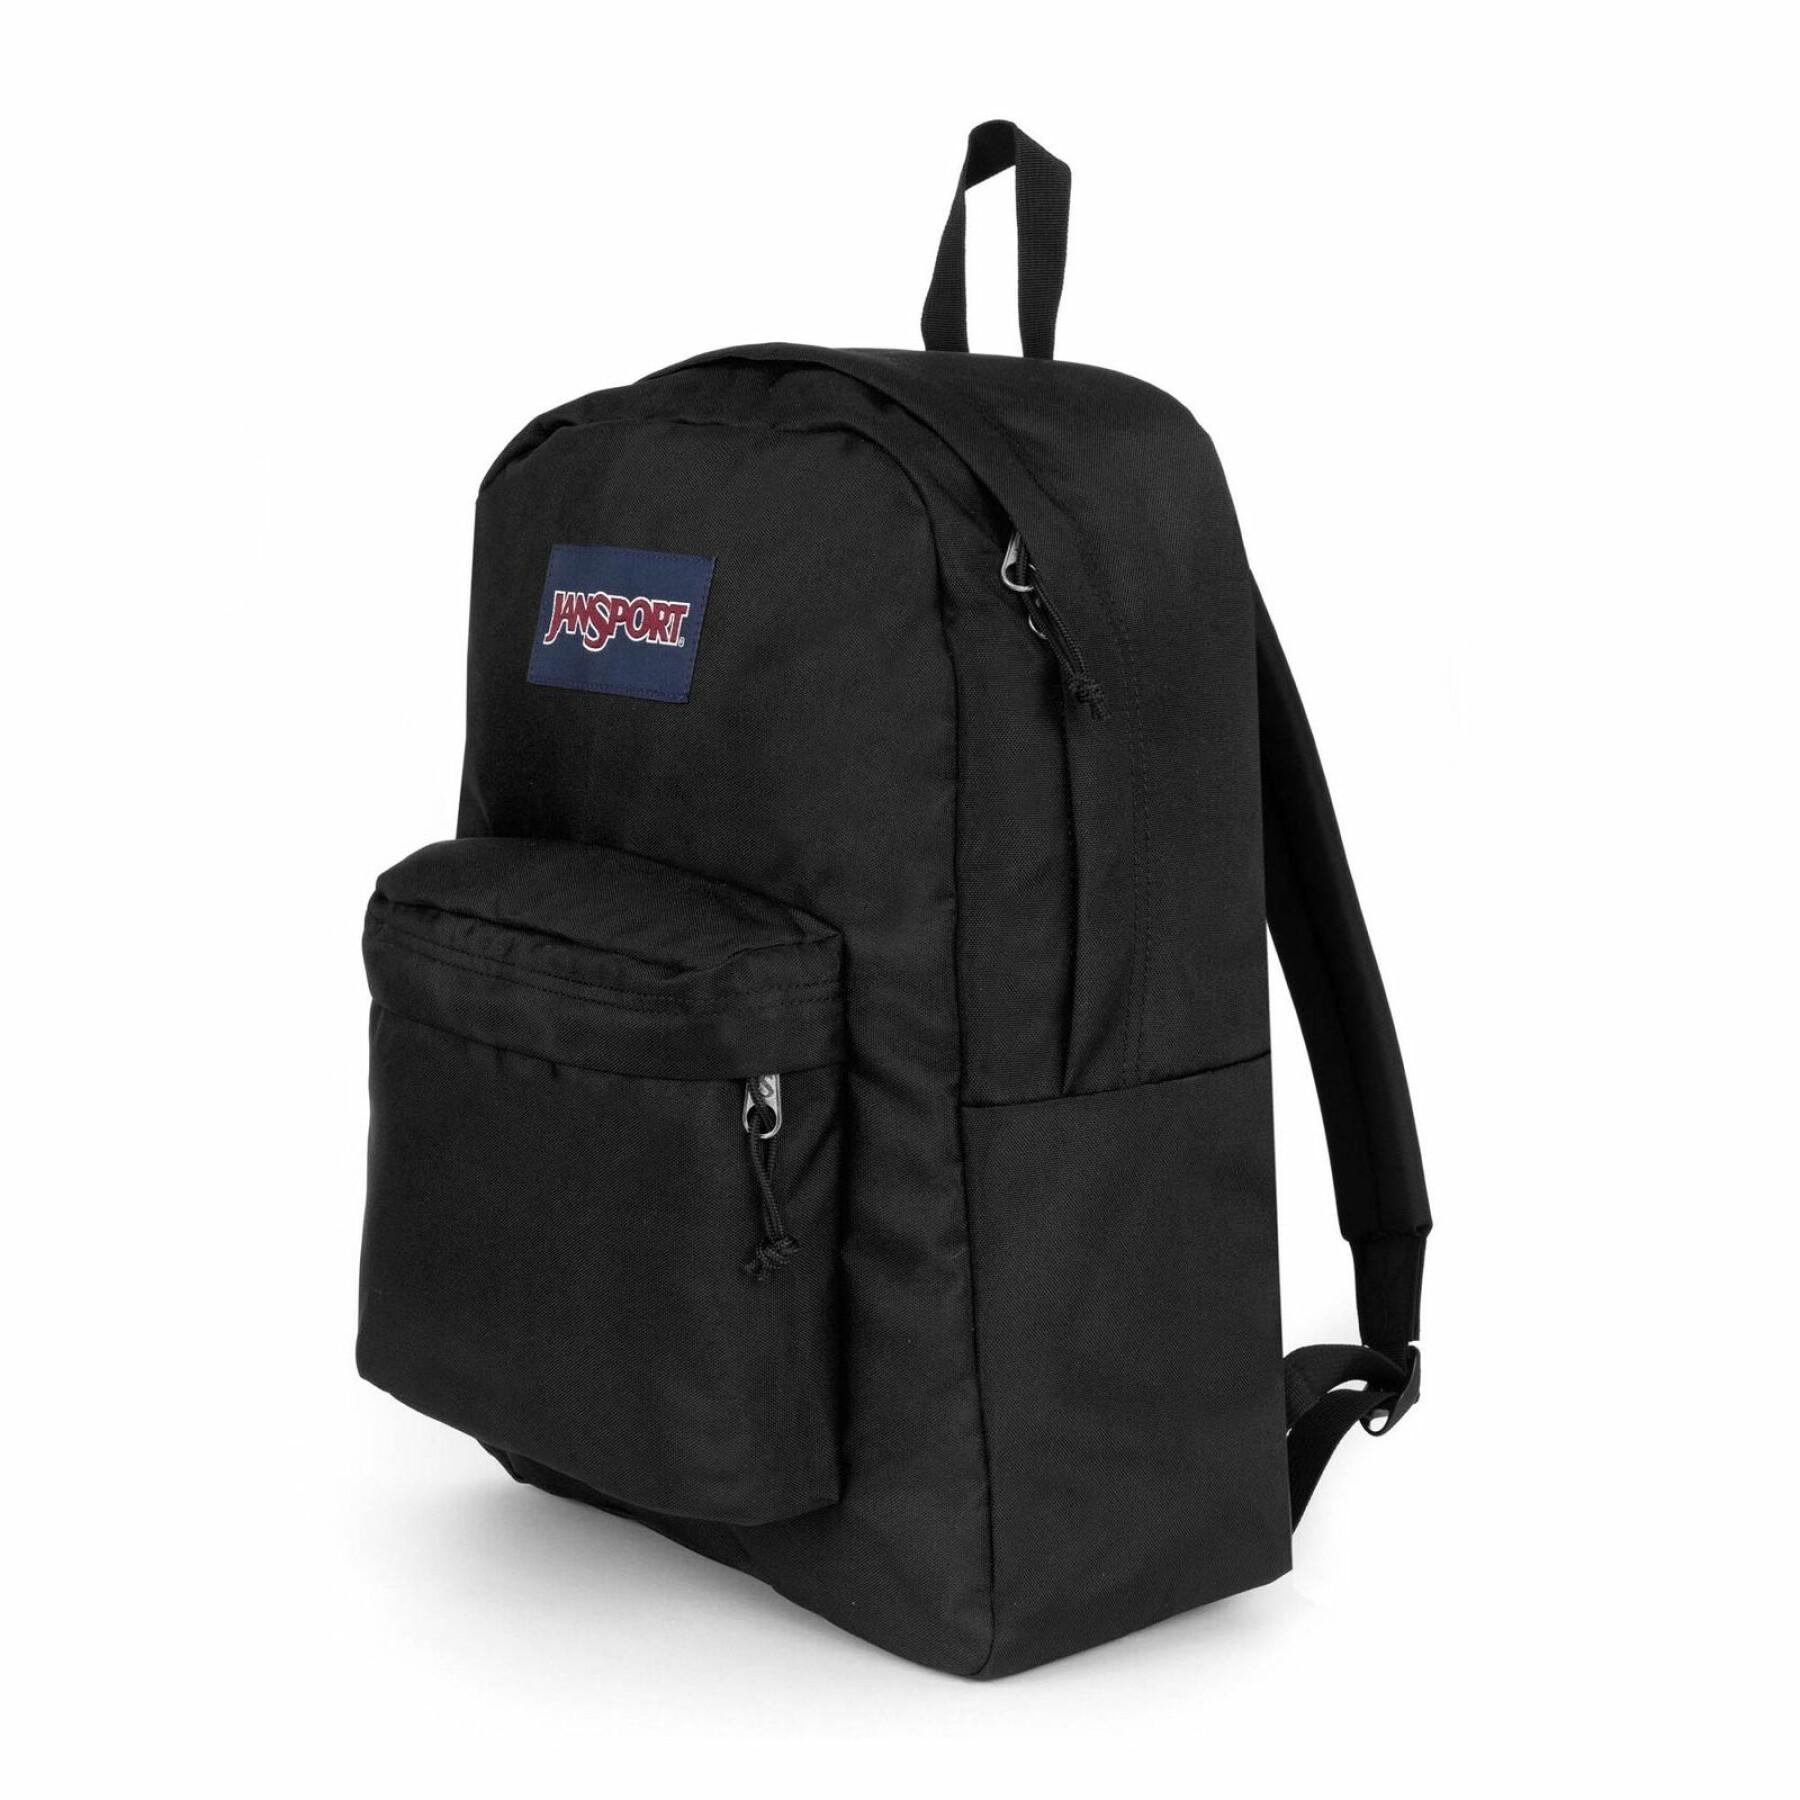 Backpack Jansport Superbreak One